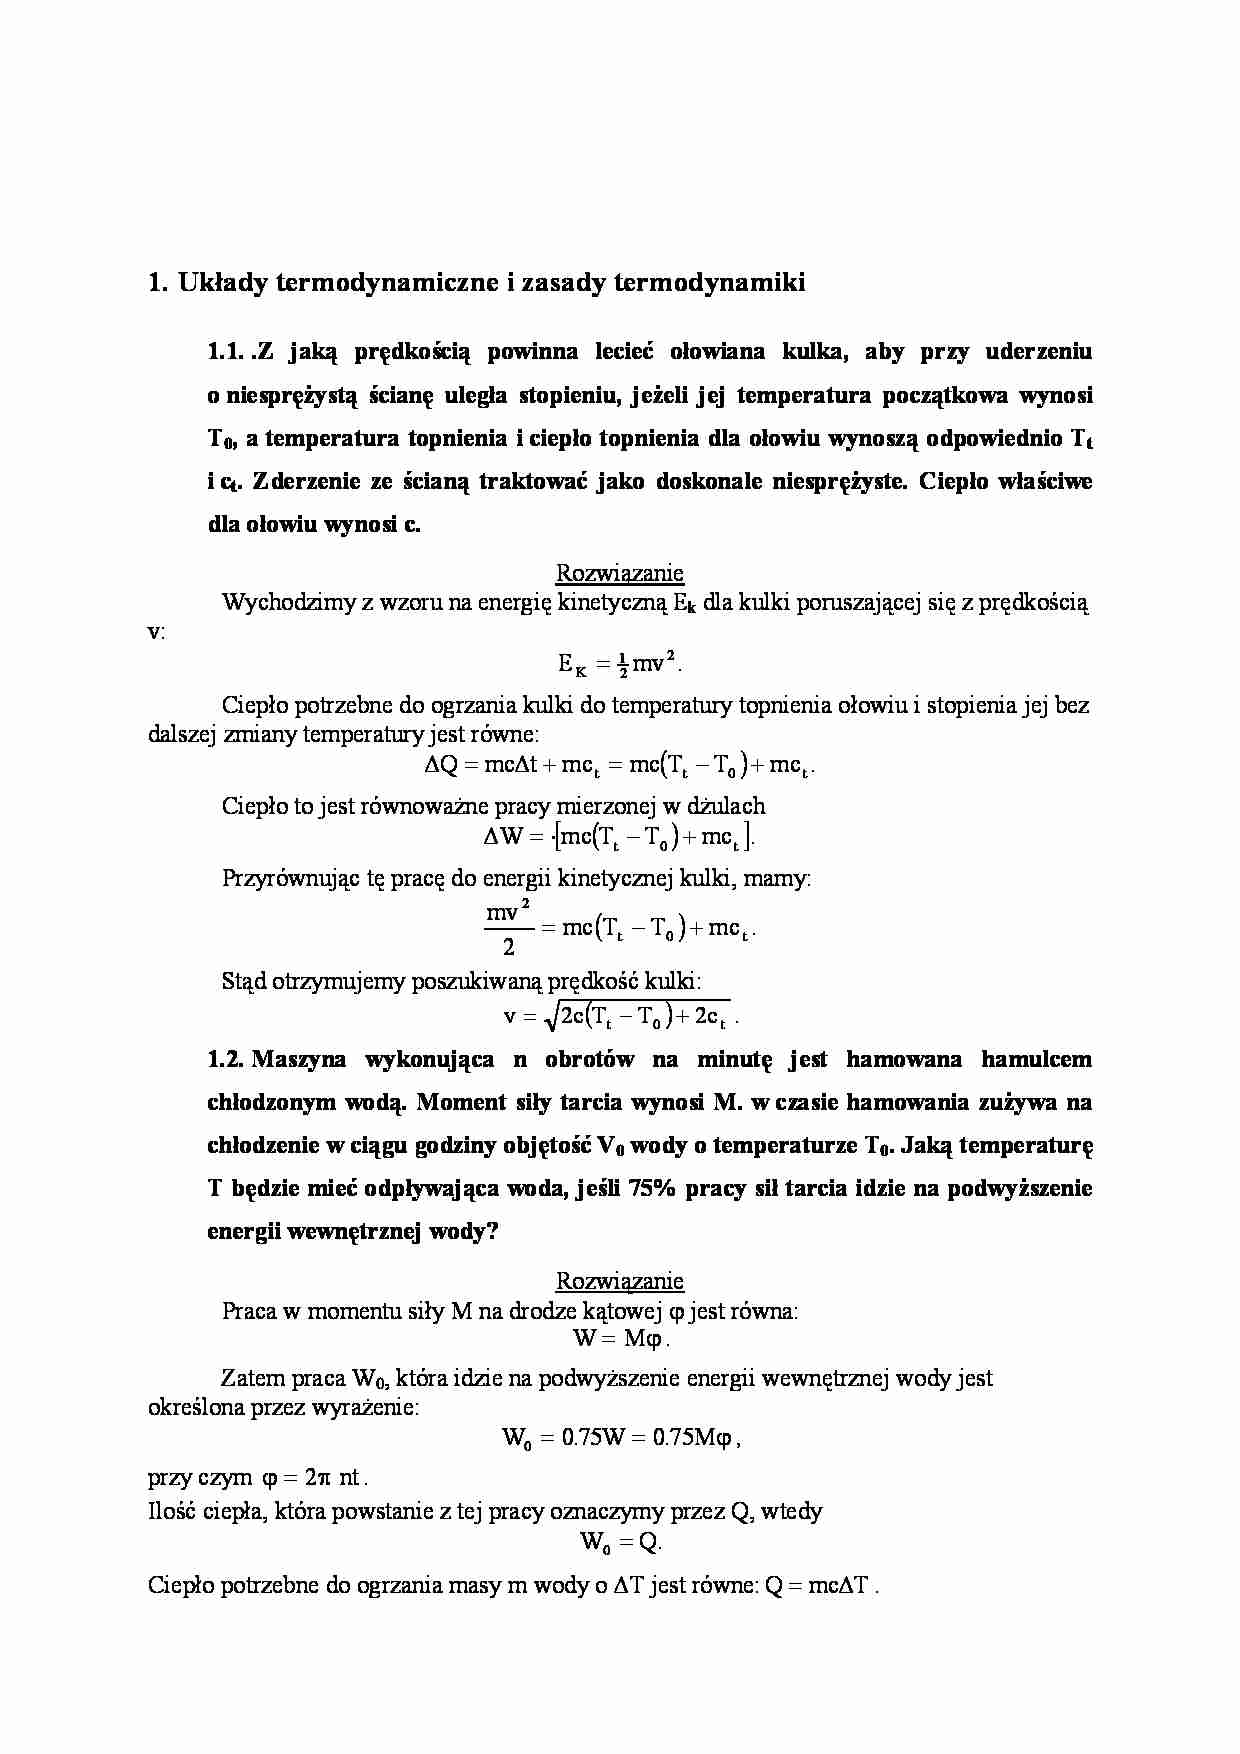 Układy termodynamiczne i zasady termodynamiki zadania z rozwiązaniami-opracowanie - strona 1